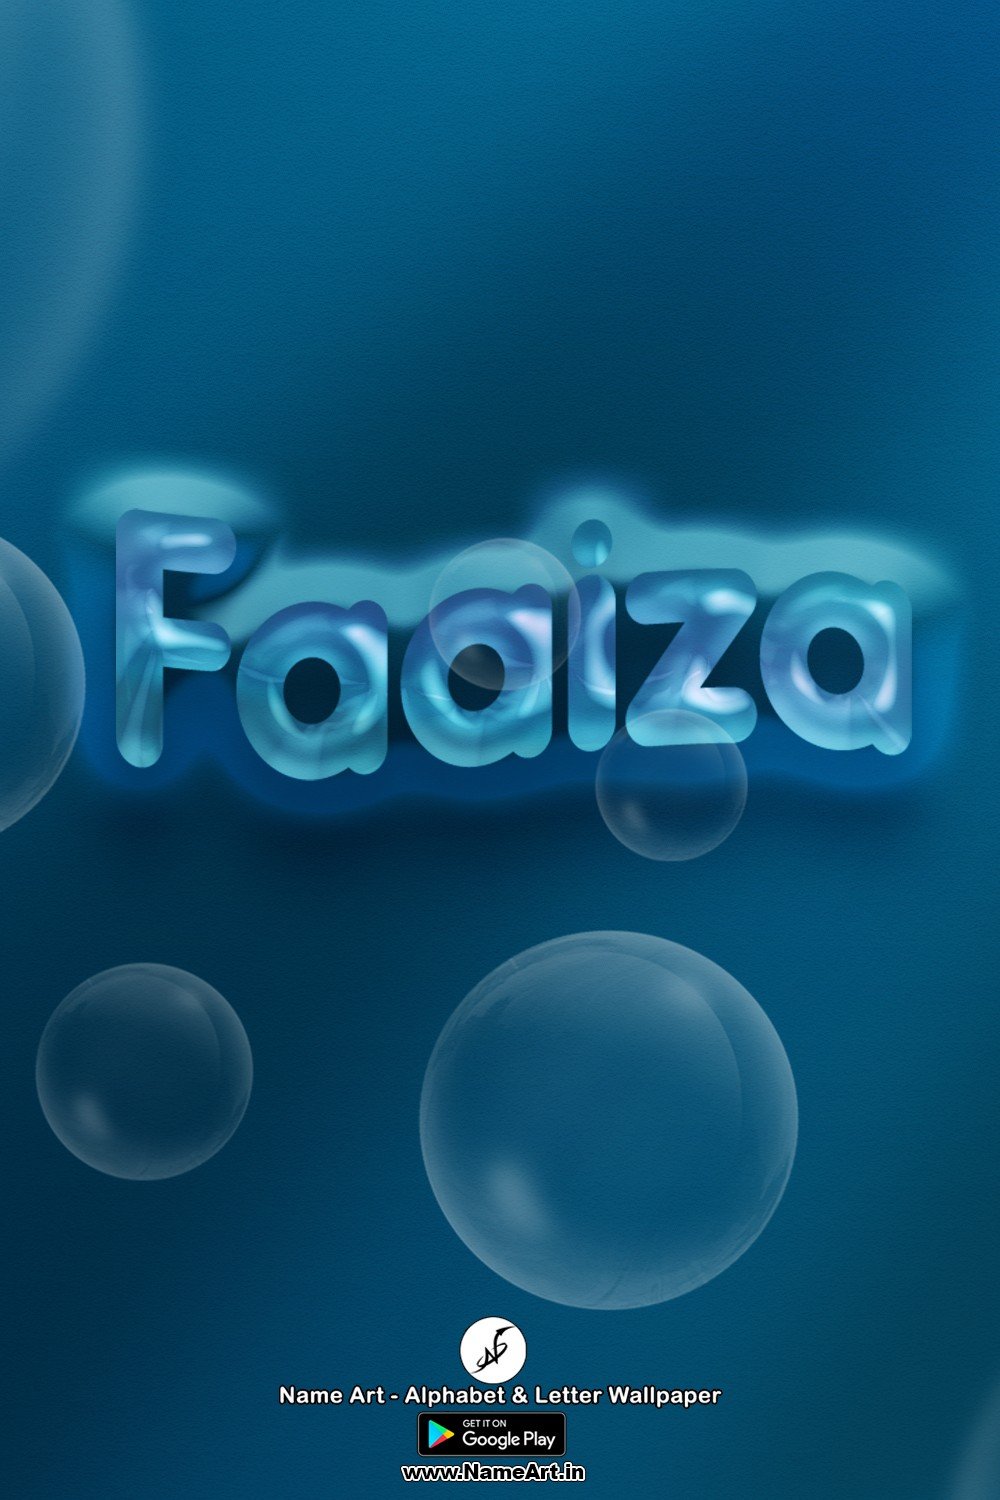 Faaiza | Whatsapp Status Faaiza | Happy Birthday Faaiza !! | New Whatsapp Status Faaiza Images |